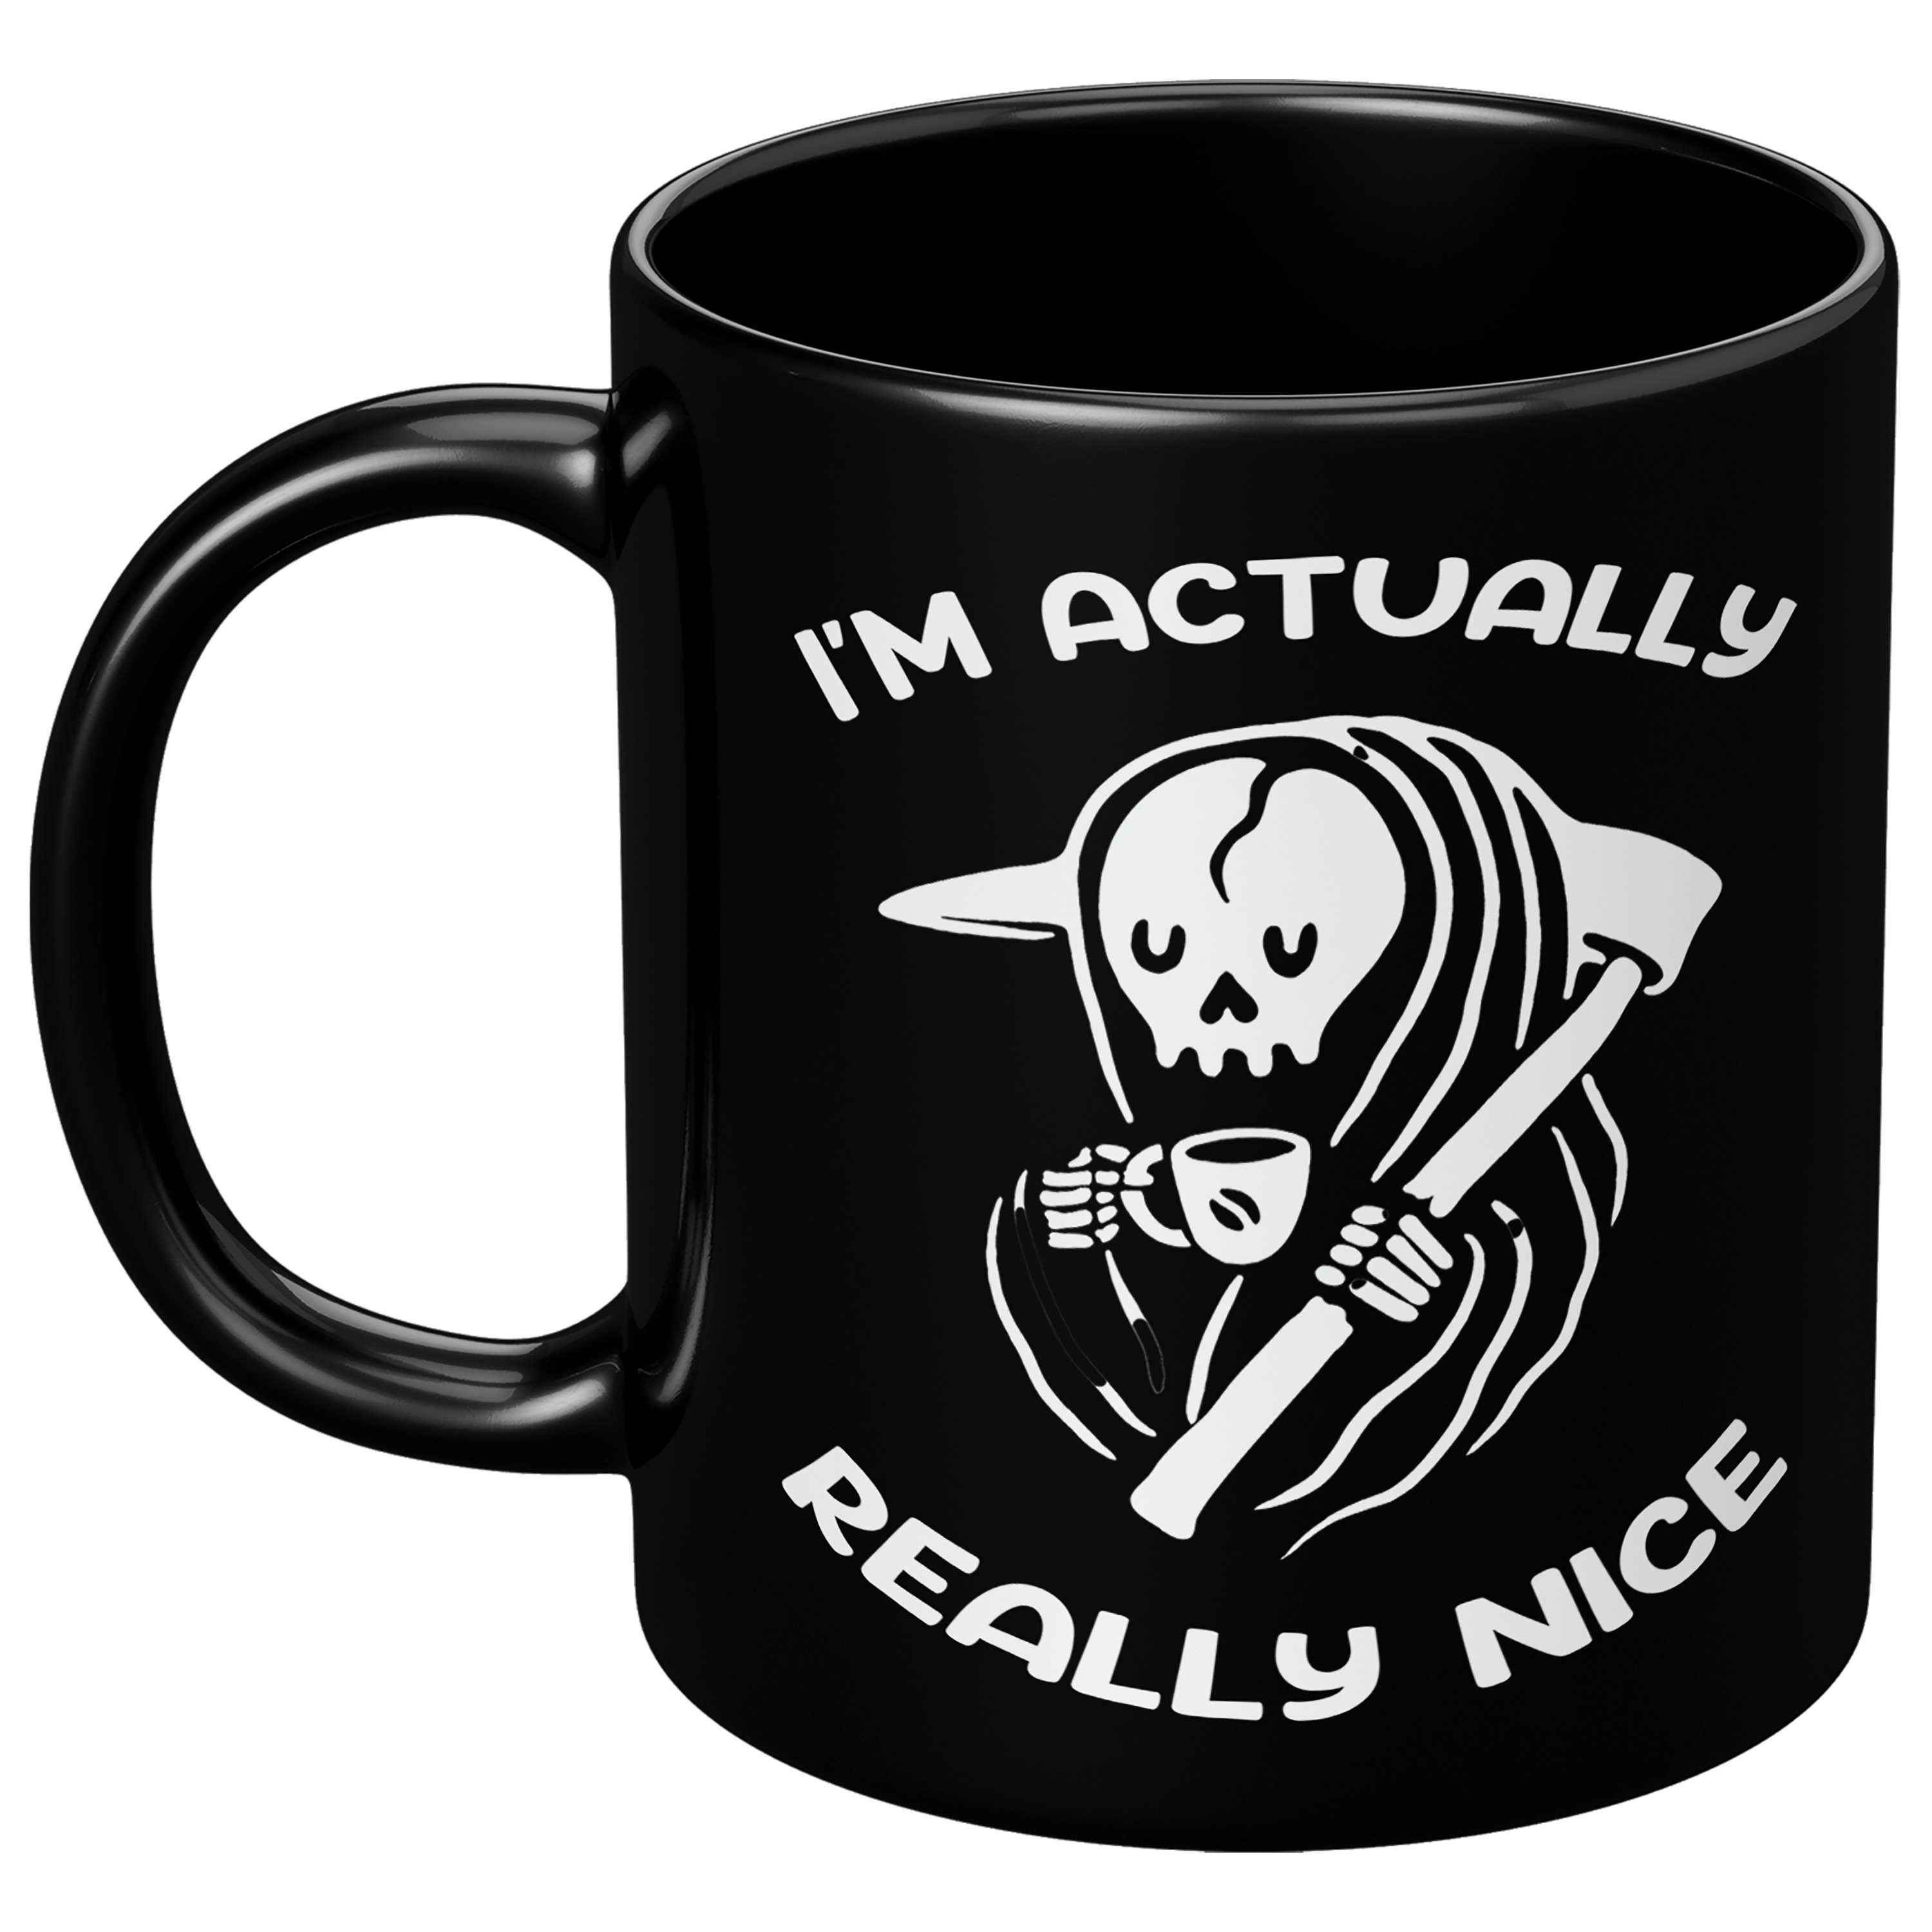 I'm Actually Really Nice -Mug